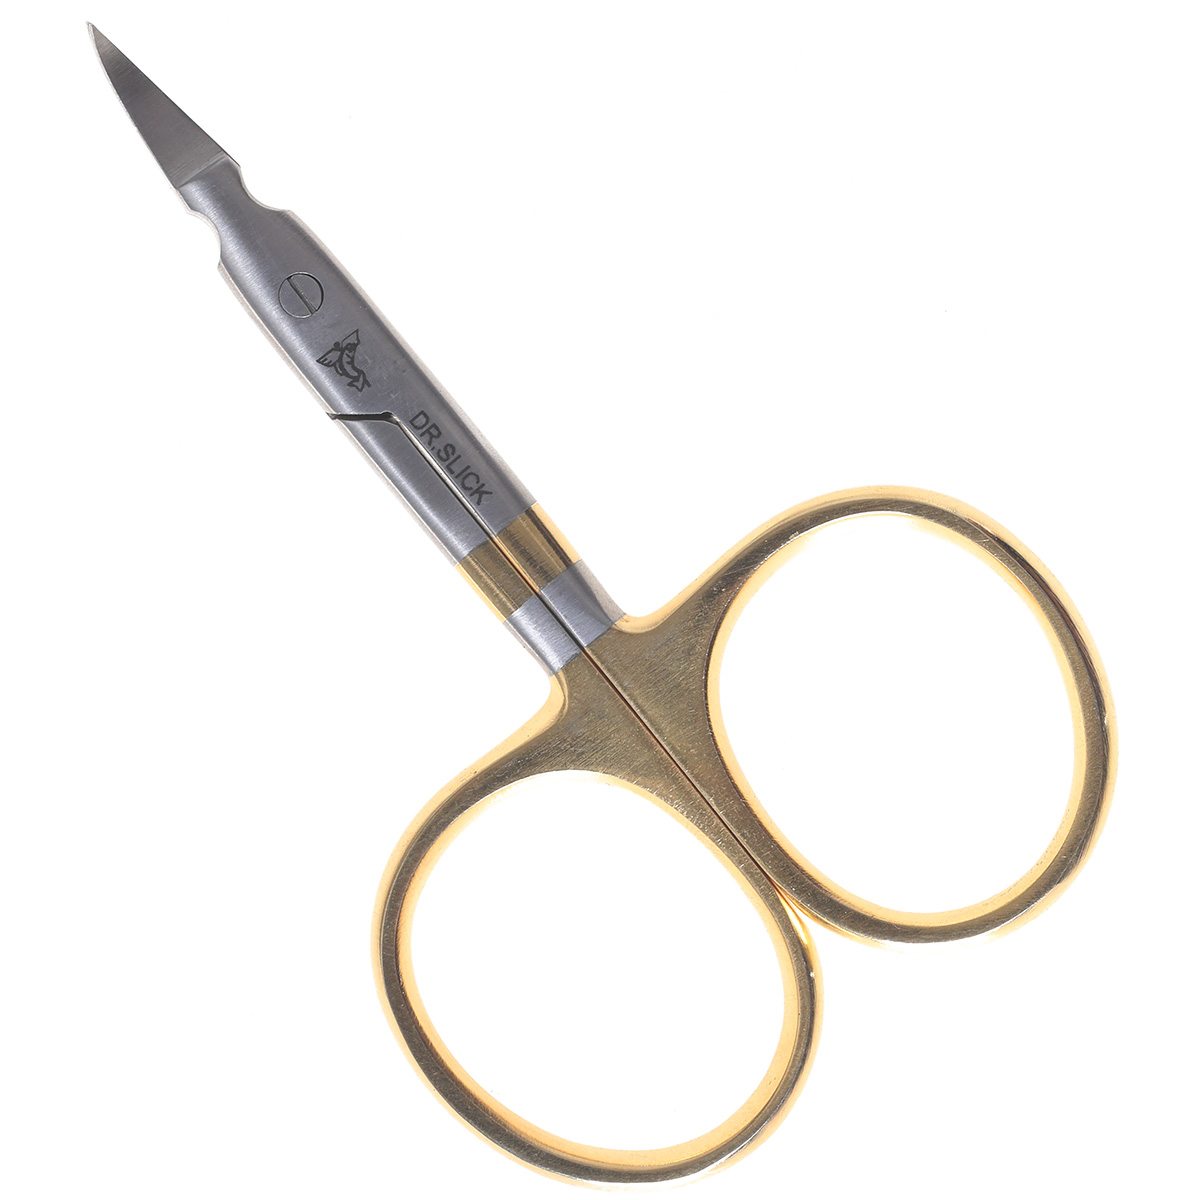 Dr Slick 3.5 Curved Arrow Scissor